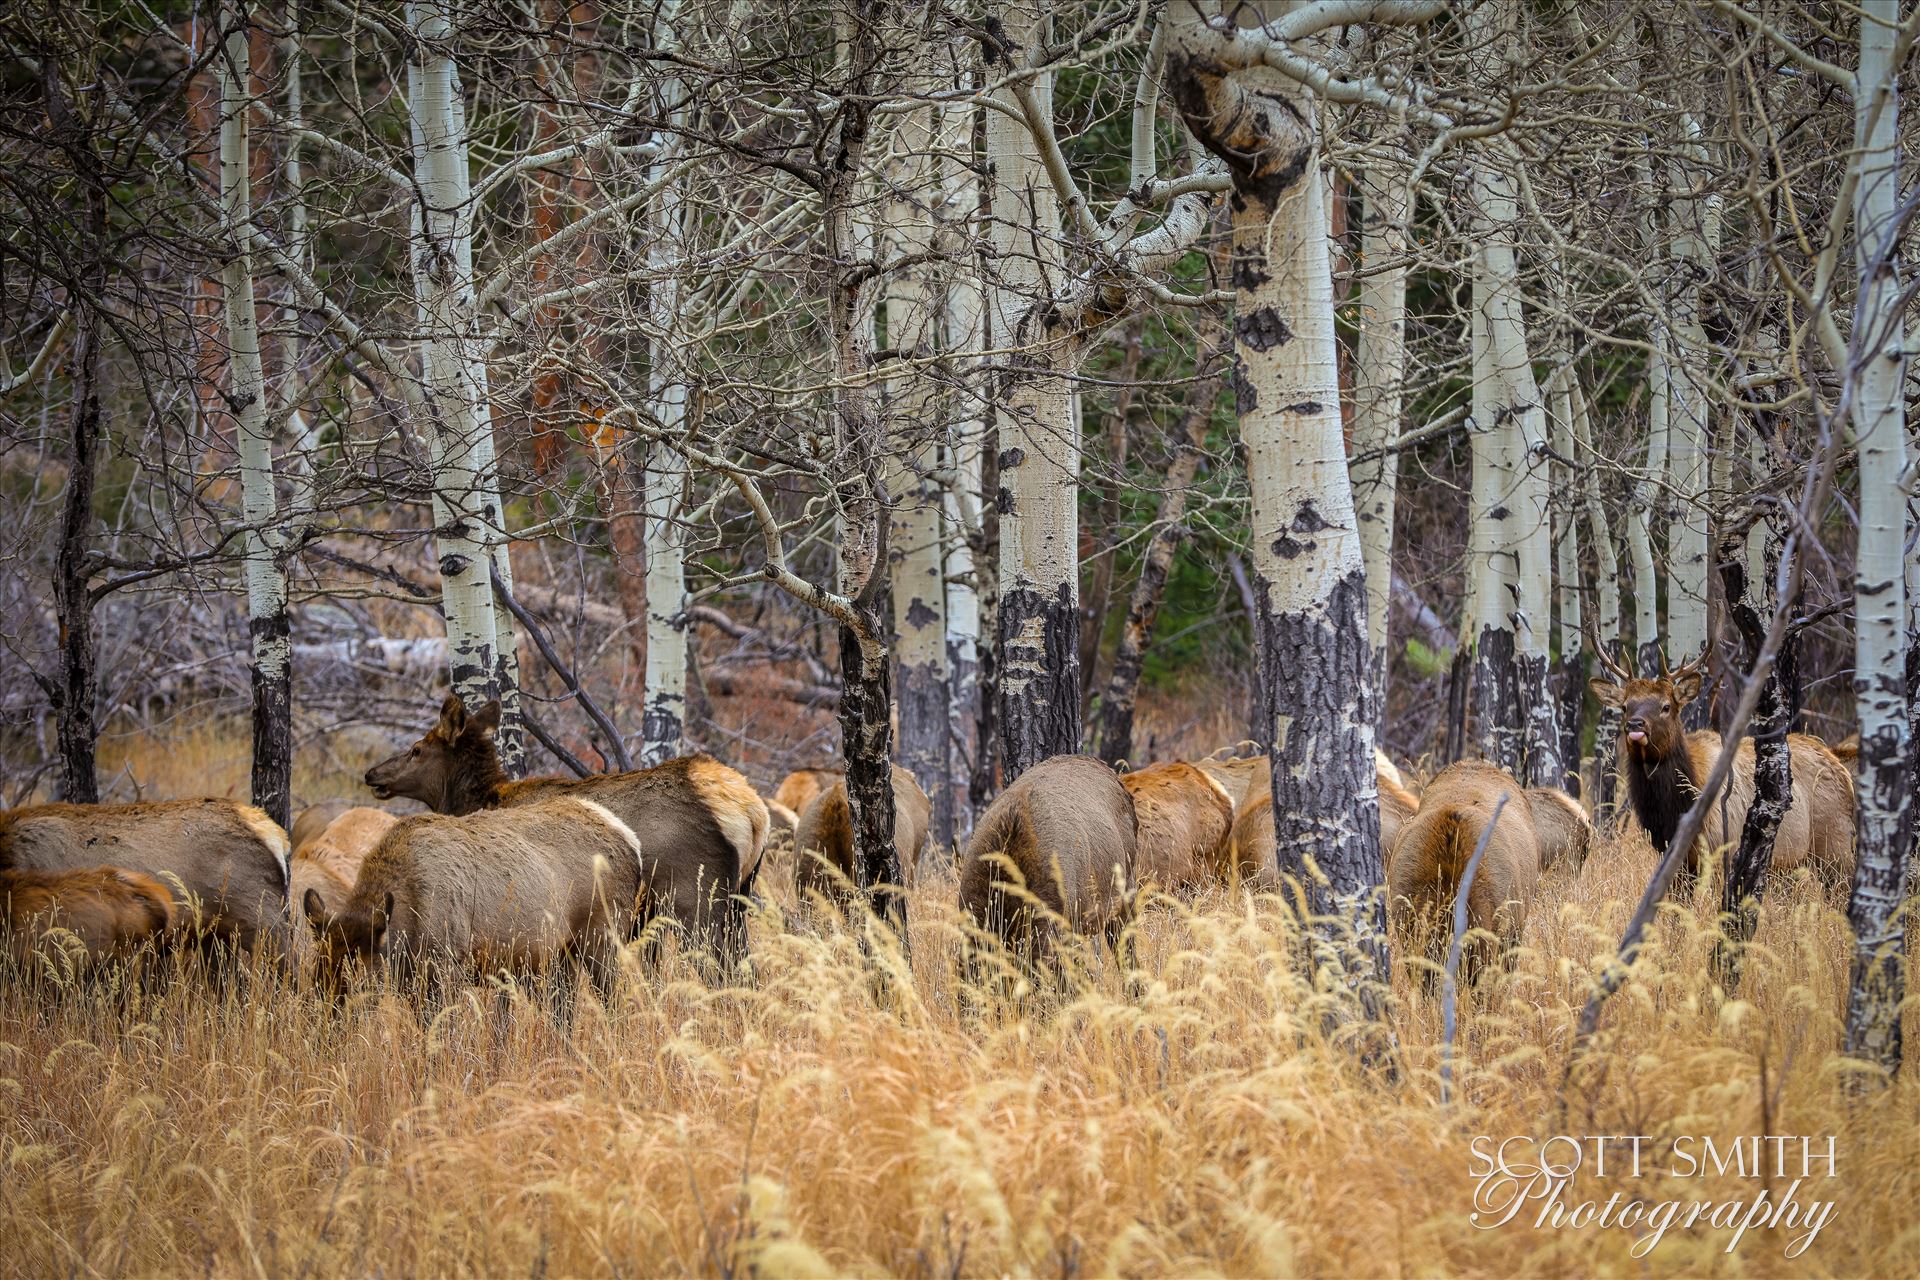 Sunday Elk No 03 - A heard of Elk near the entrance to Rocky Mountain National Park, Estes Park, Colorado. by Scott Smith Photos